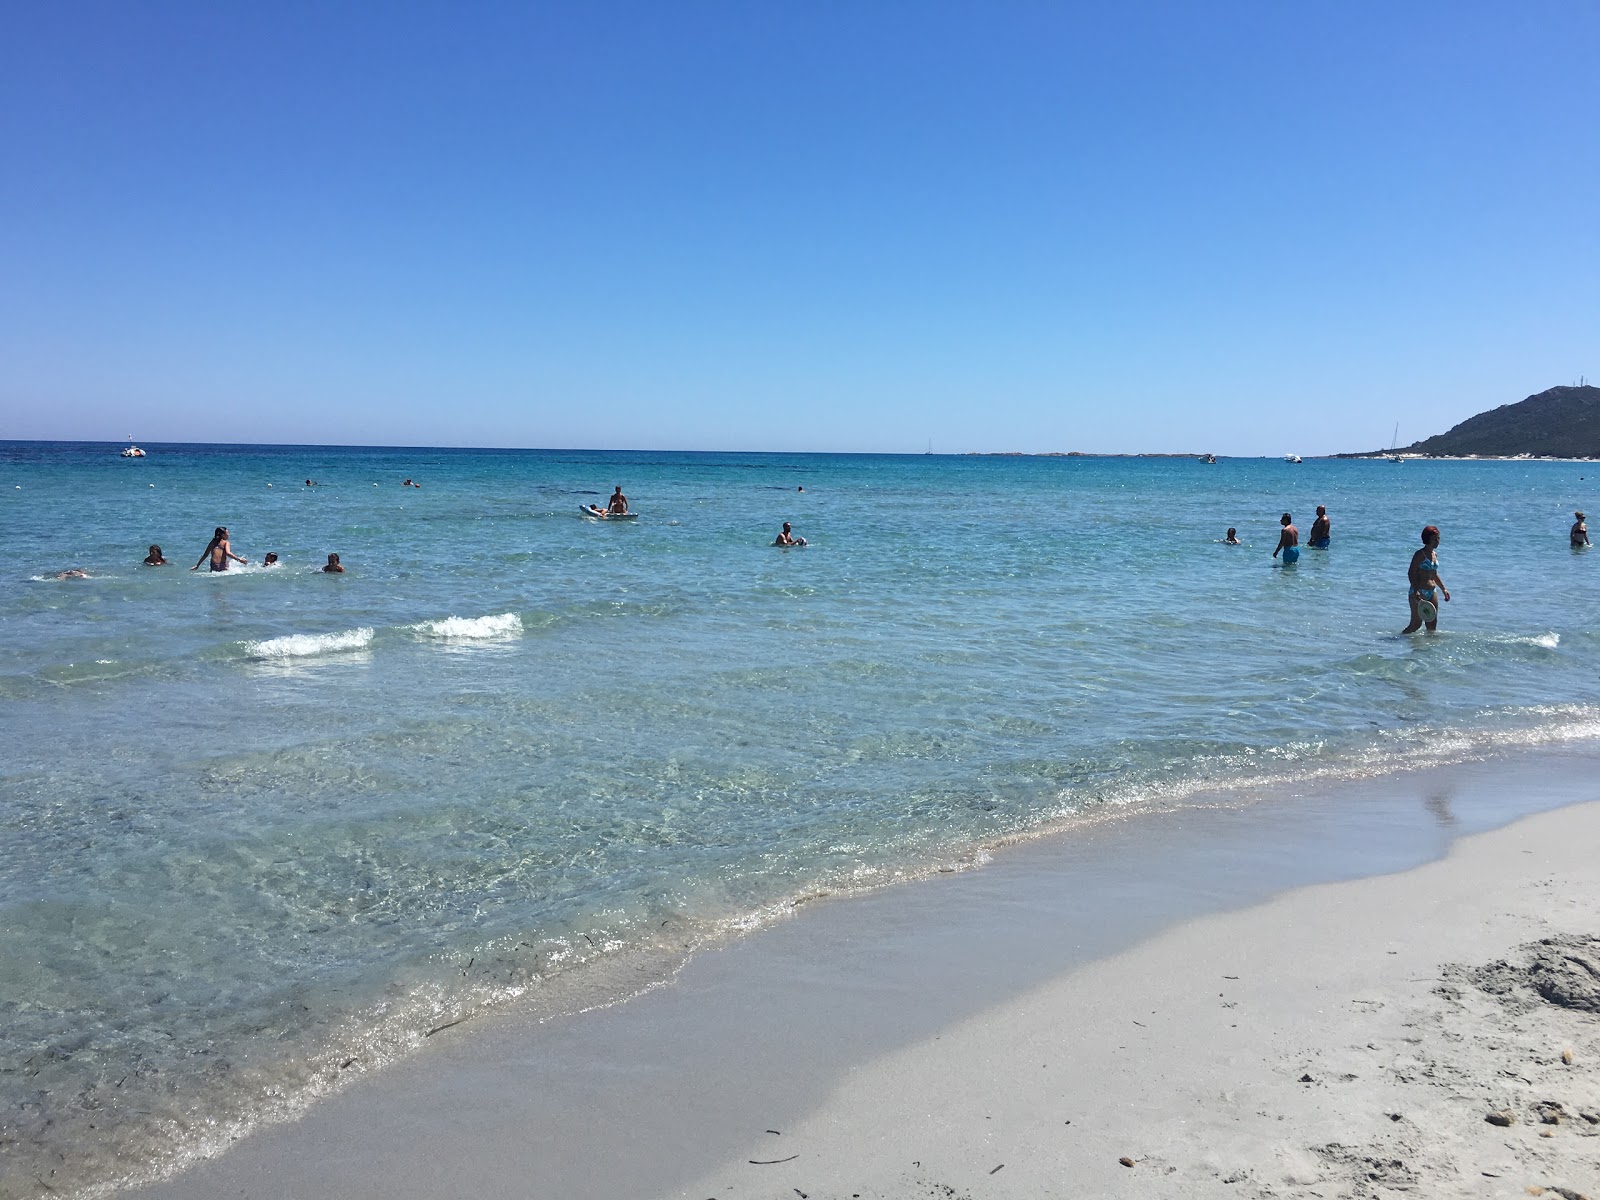 卡波科米诺海滩的照片 带有碧绿色纯水表面